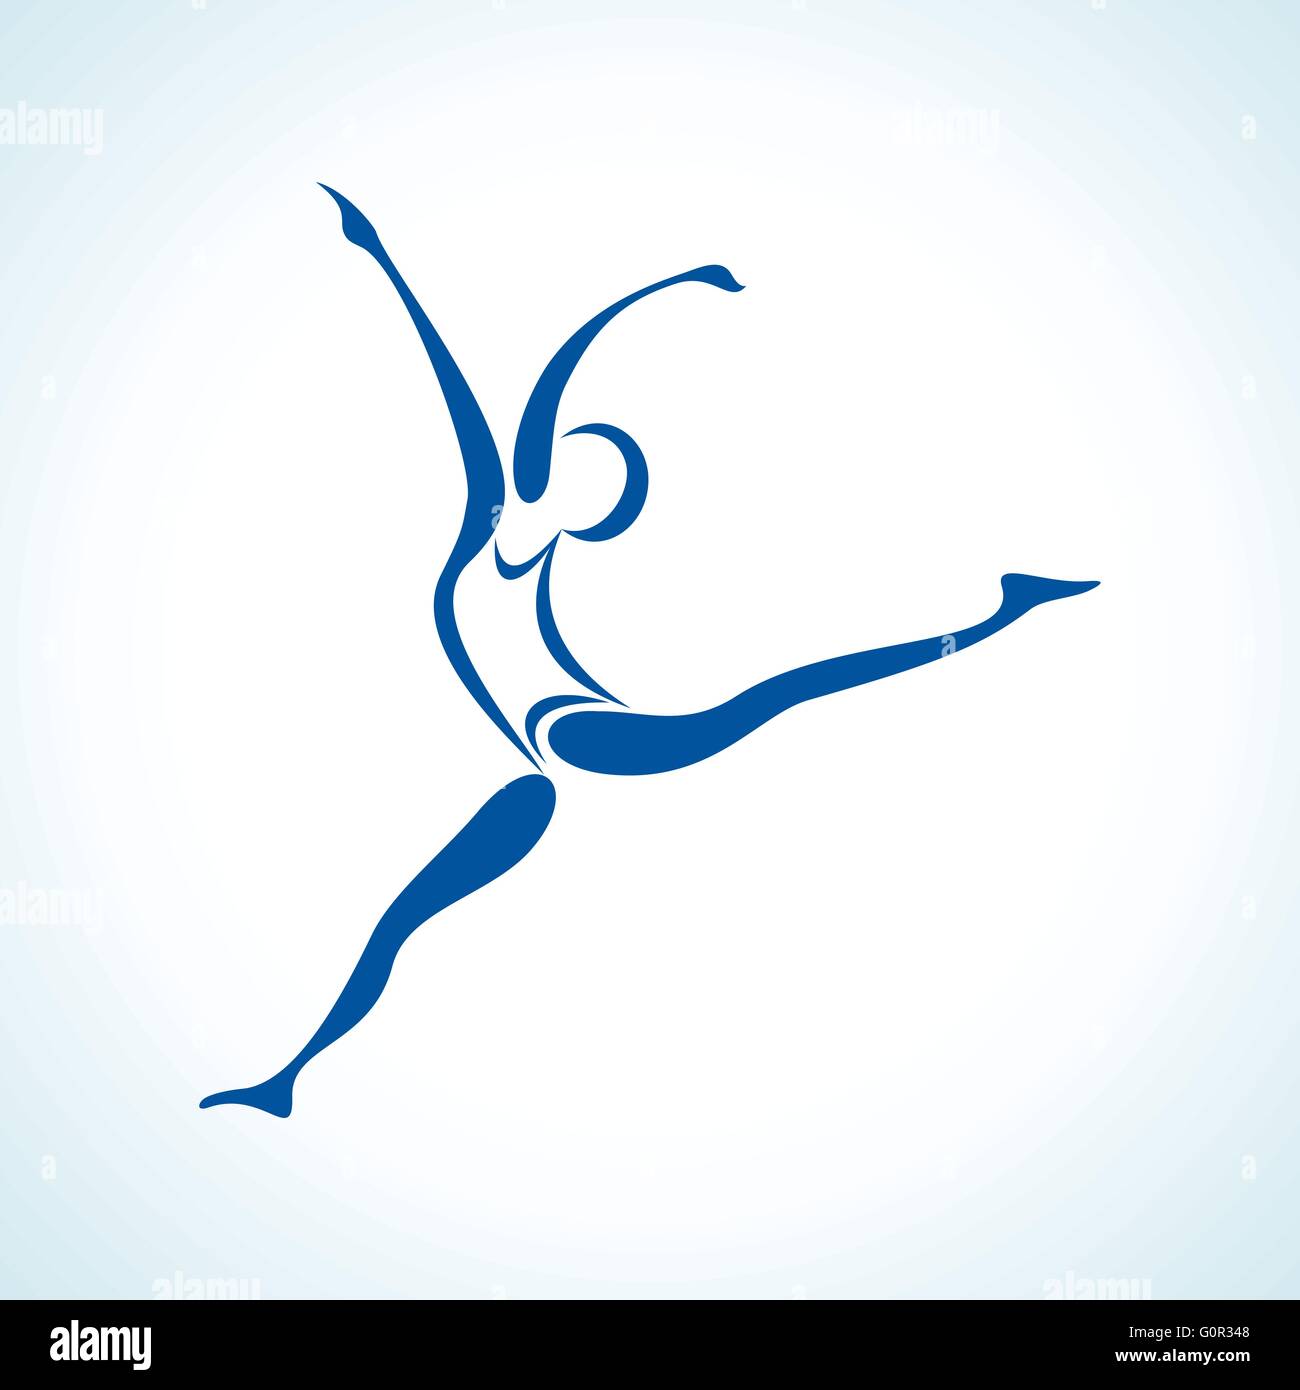 illustration of stylized yoga pose Stock Vector Image & Art - Alamy